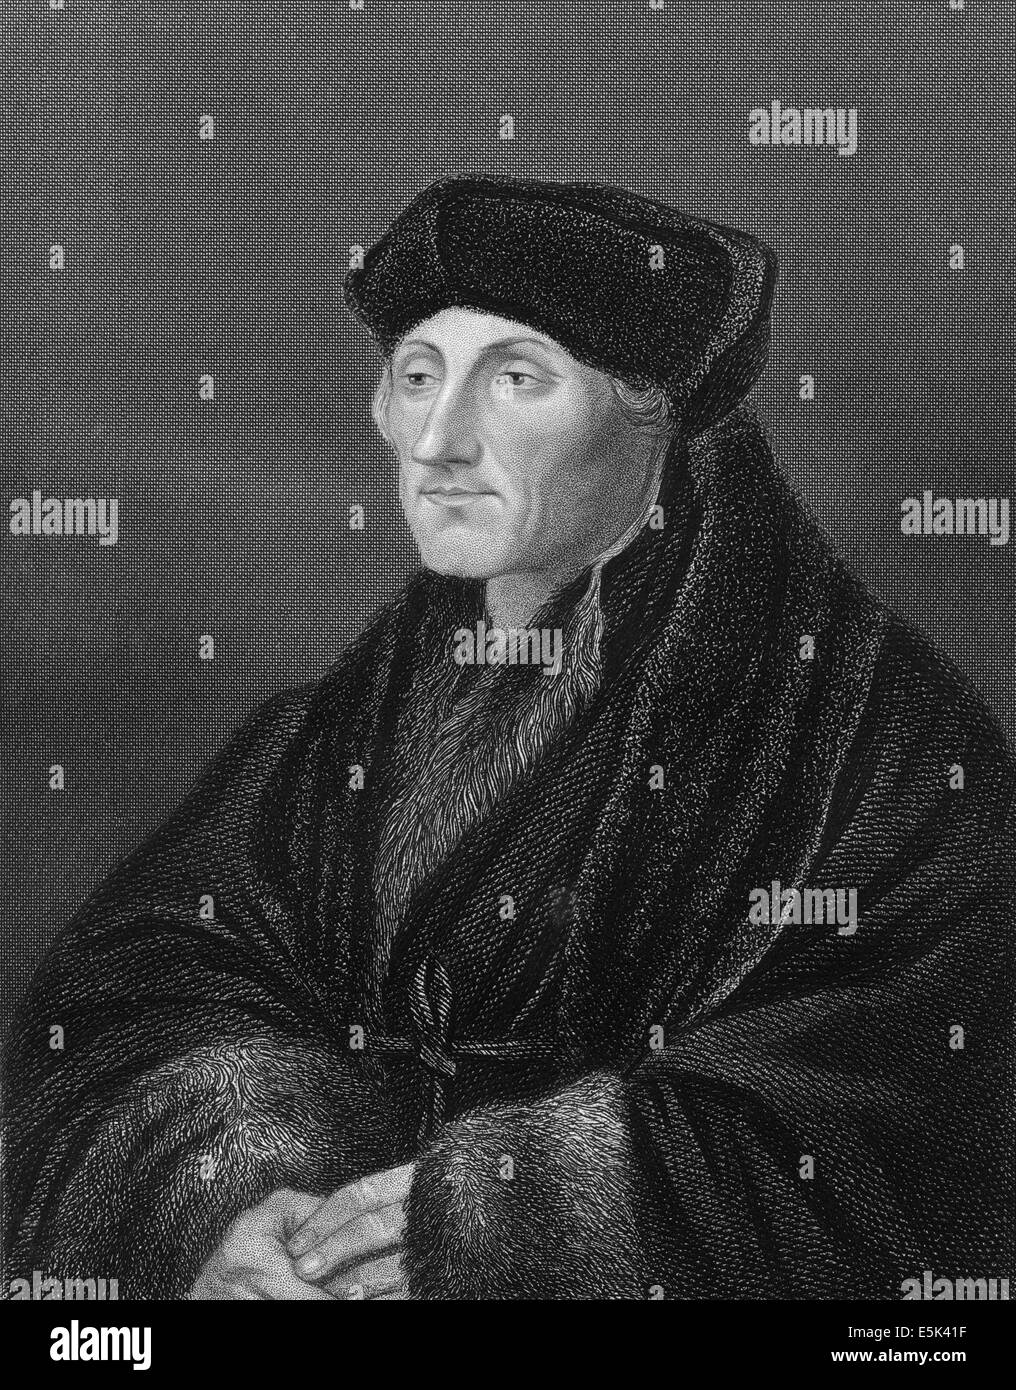 Desiderius Erasmus de Rotterdam, 1465 - 1536, d'un humaniste néerlandais, théologien, philosophe, universitaire et auteur, Banque D'Images